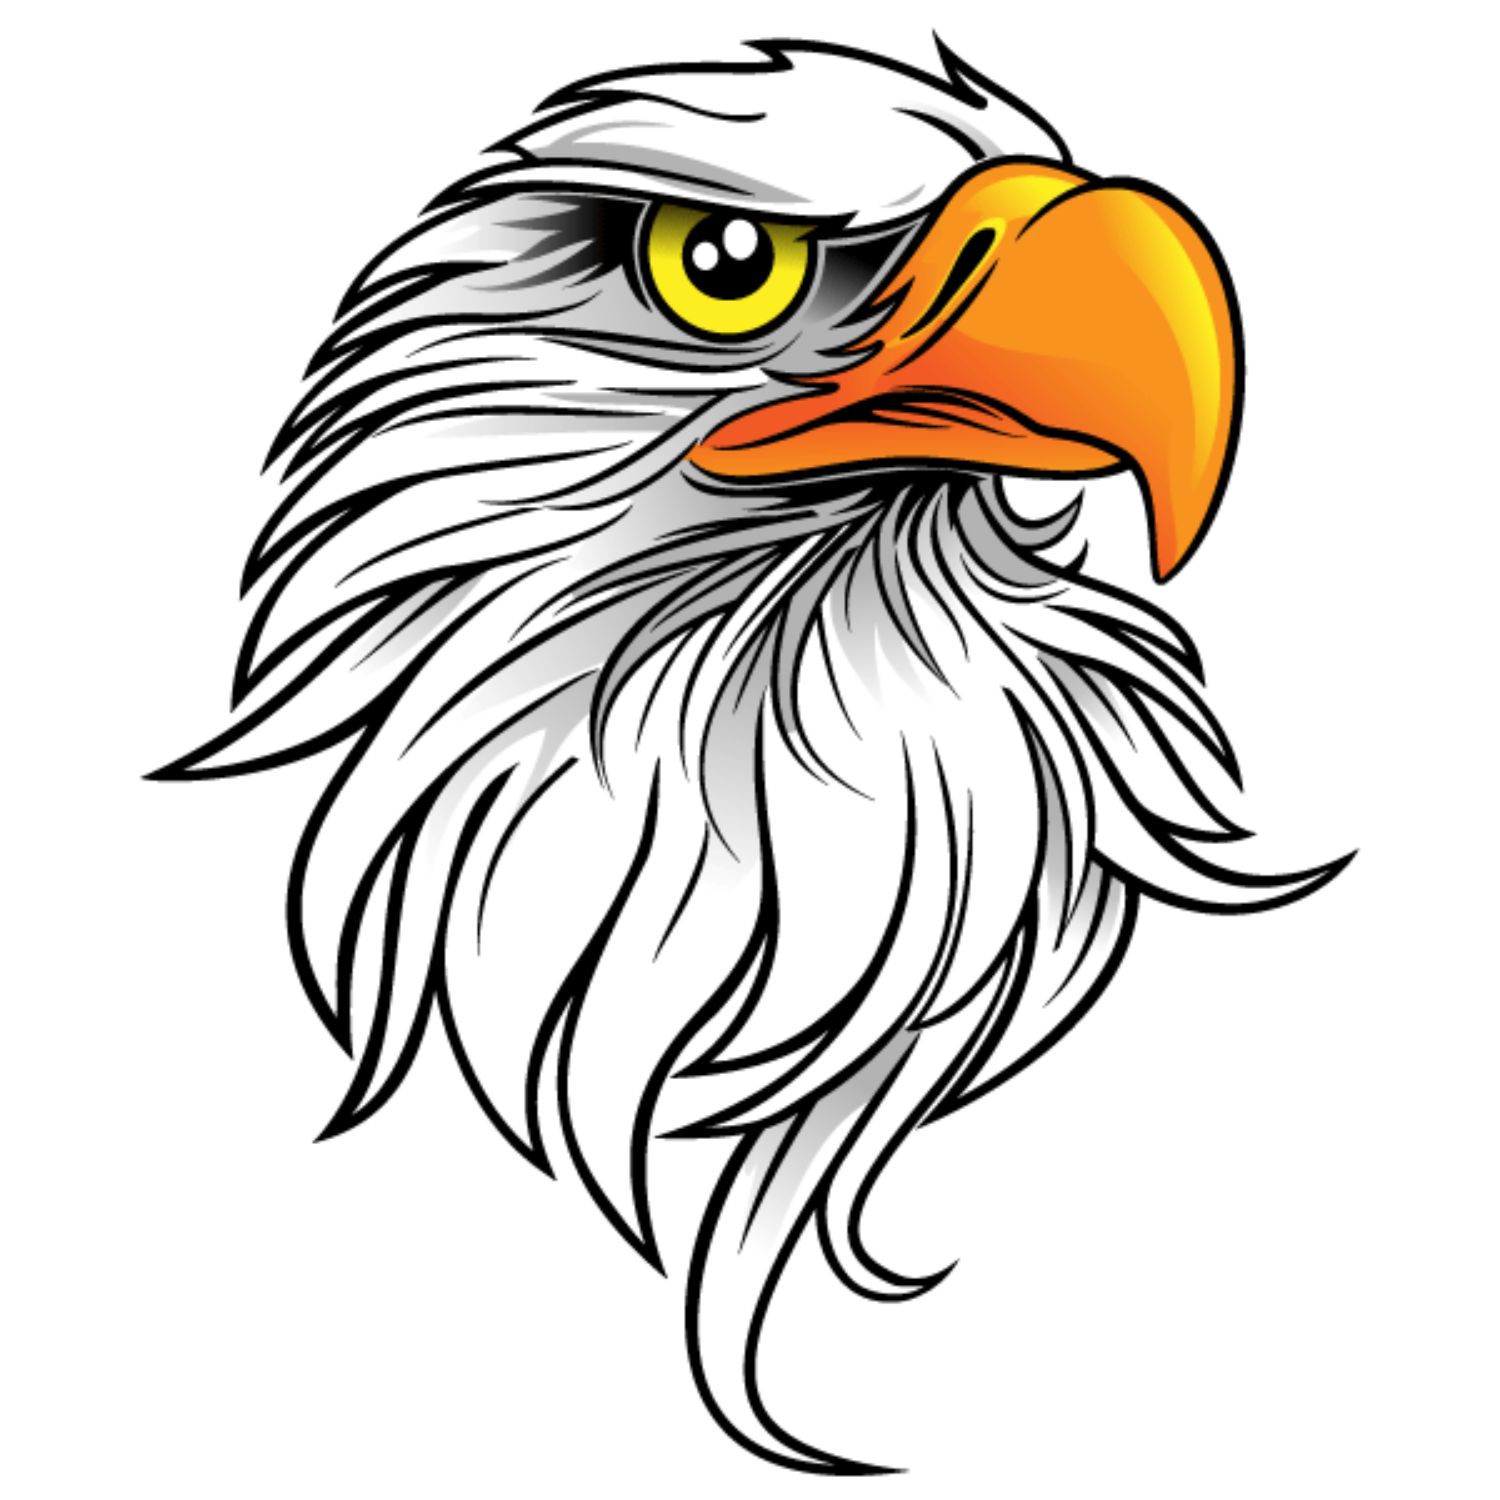 Head of an eagle